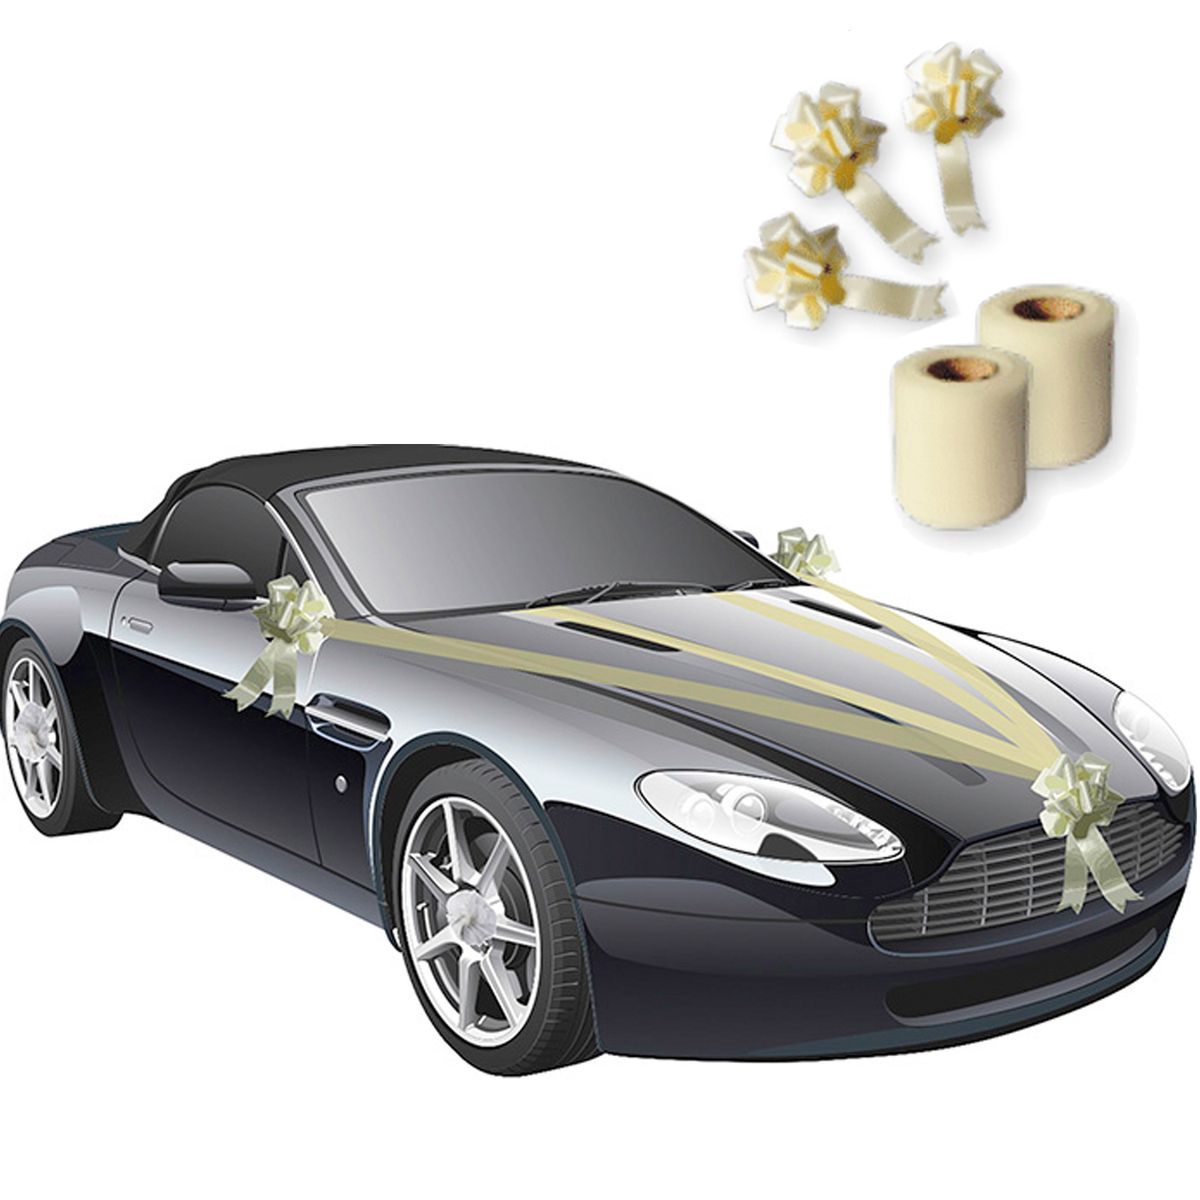 https://bilder.feuerwerk-onlineshop.de/item/images/14826/full/14826-Hochzeits-Auto-Girlande-8-cm-x-20-m-Autoschleife-Autoschmuck-Wedding-Car-Deko_3.jpg